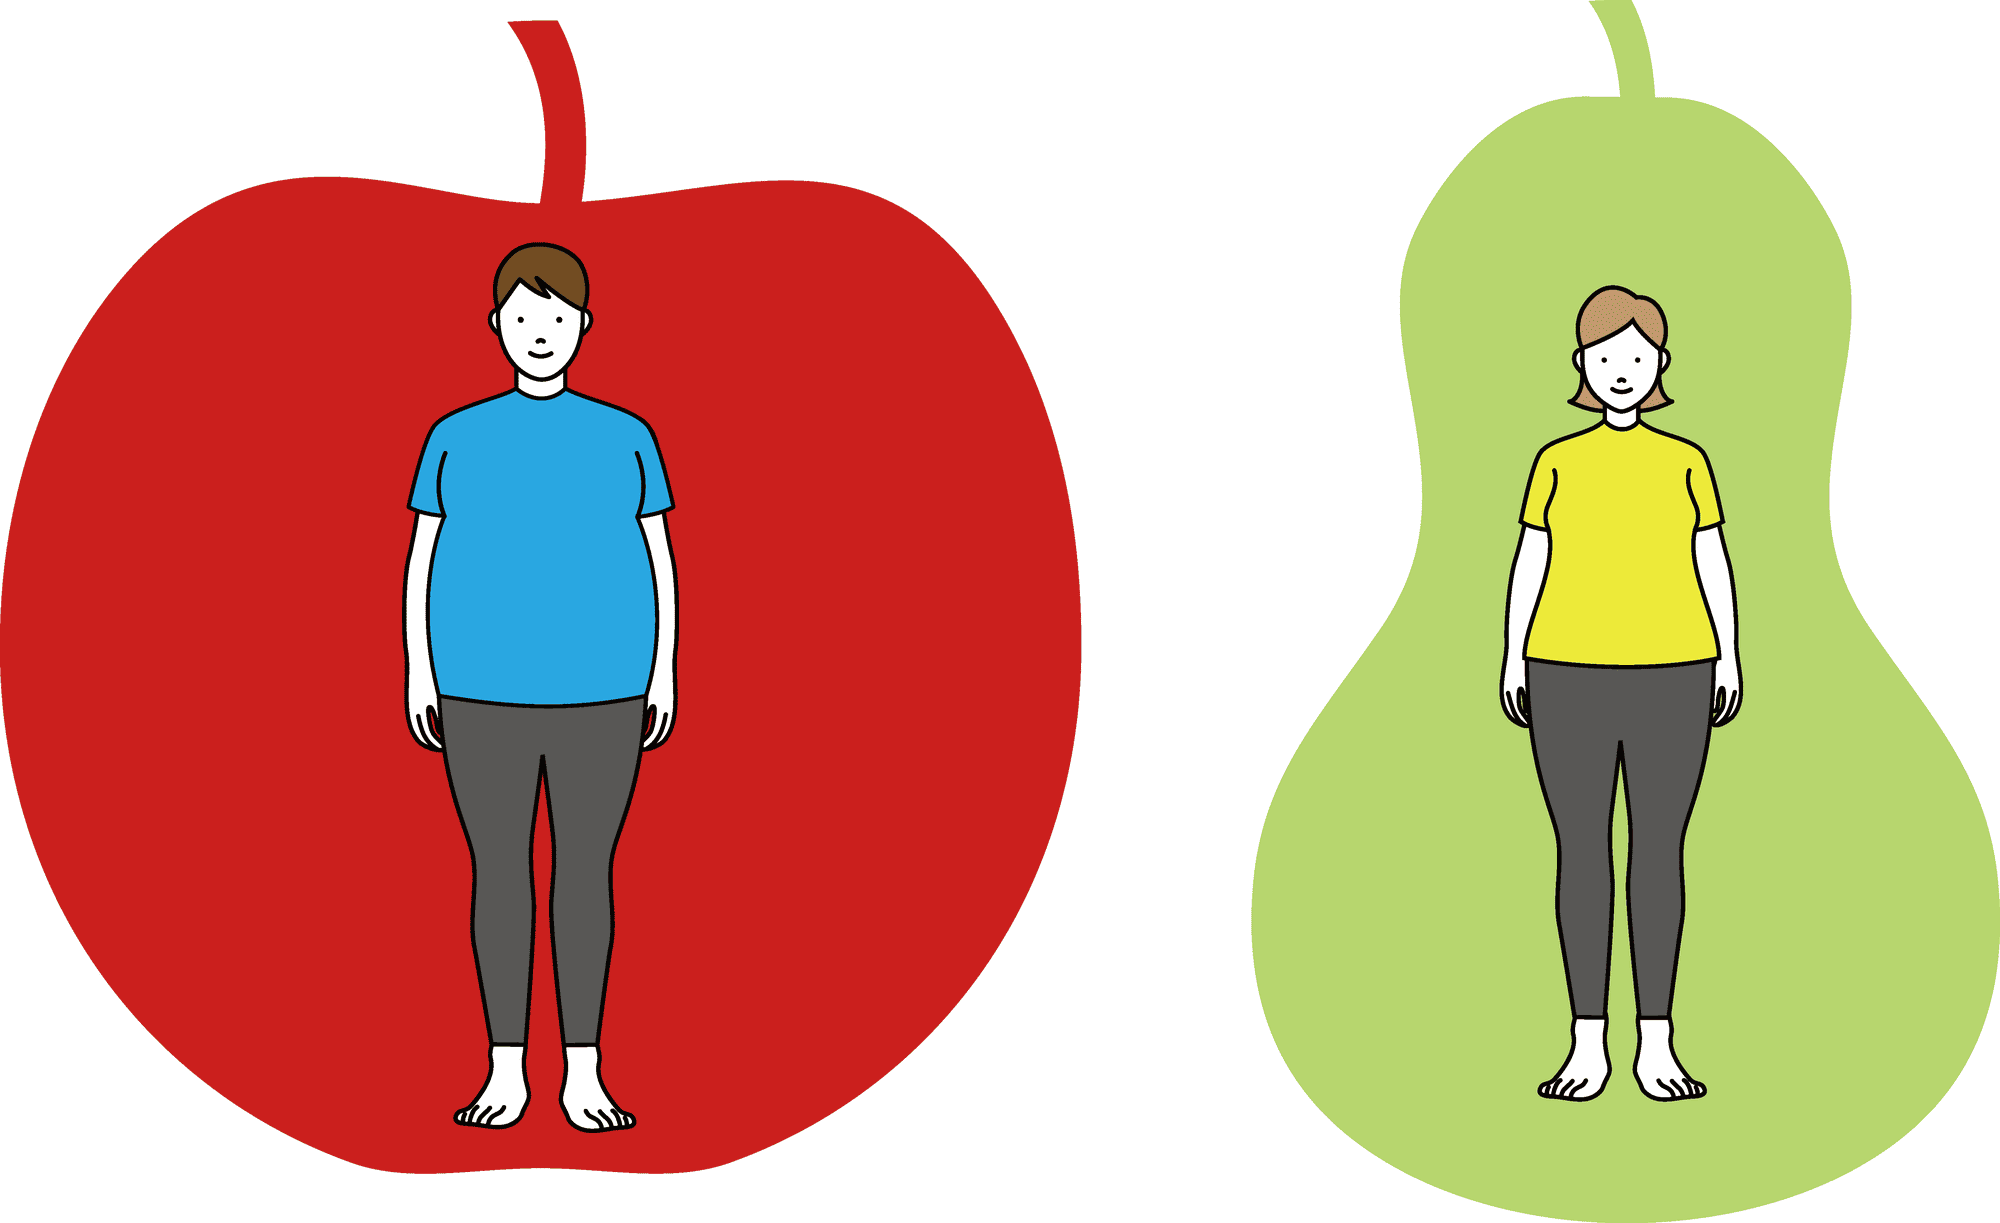 「内臓脂肪型肥満」は手足は細くてもお腹がぽっこりポッコリと出ることから「りんご型肥満」、「皮下脂肪型肥満」はお尻や太ももなど下半身につきやすく、脂肪のつき方から「洋なし型肥満」とも呼ばれます。